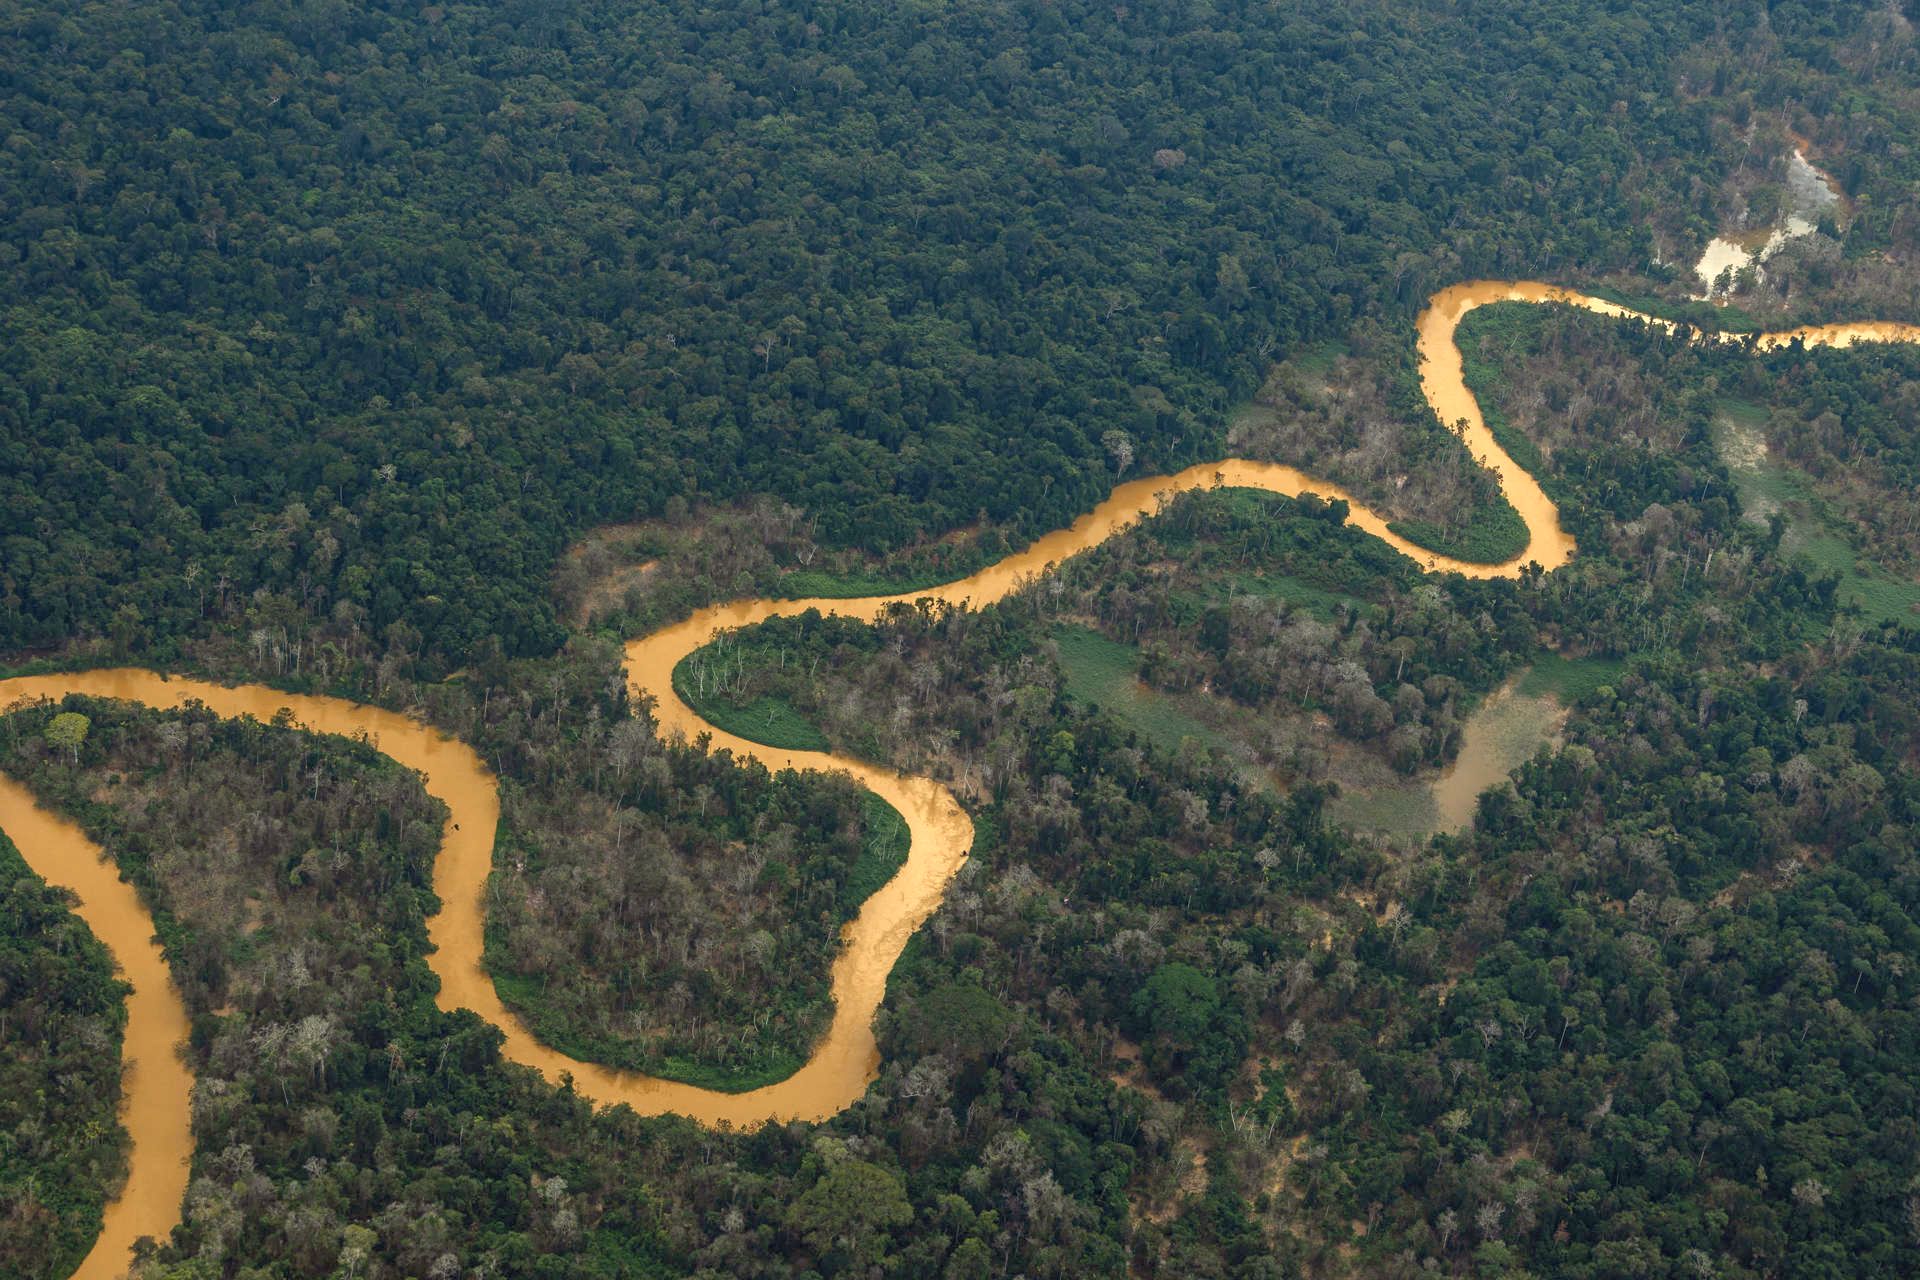 Fotografía del río Mucajaí, con un color escuro, debido a la presencia de minería ilegal